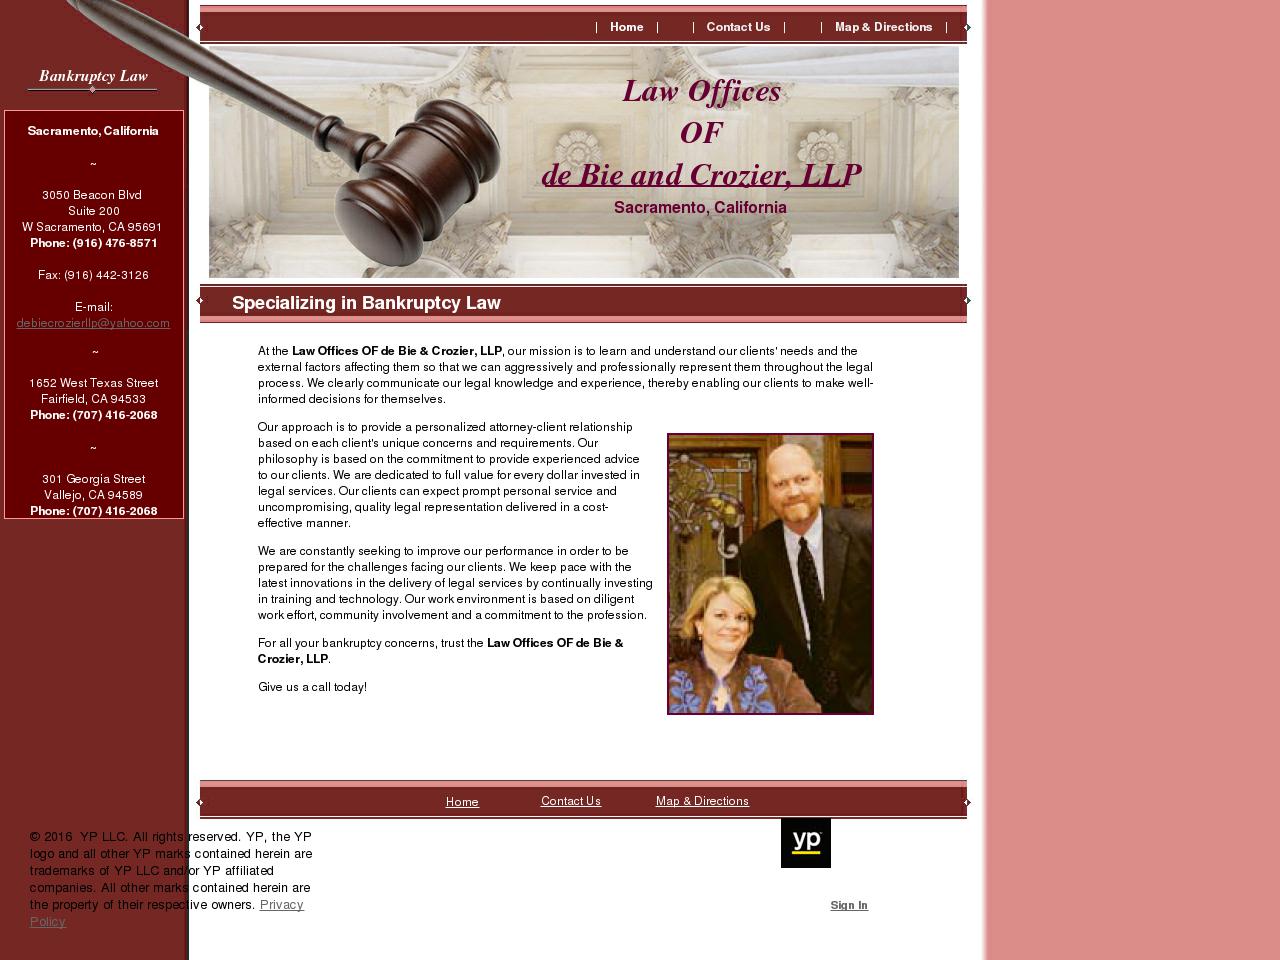 De Bie & Crozier LLP Law Offices Of - West Sacramento CA Lawyers